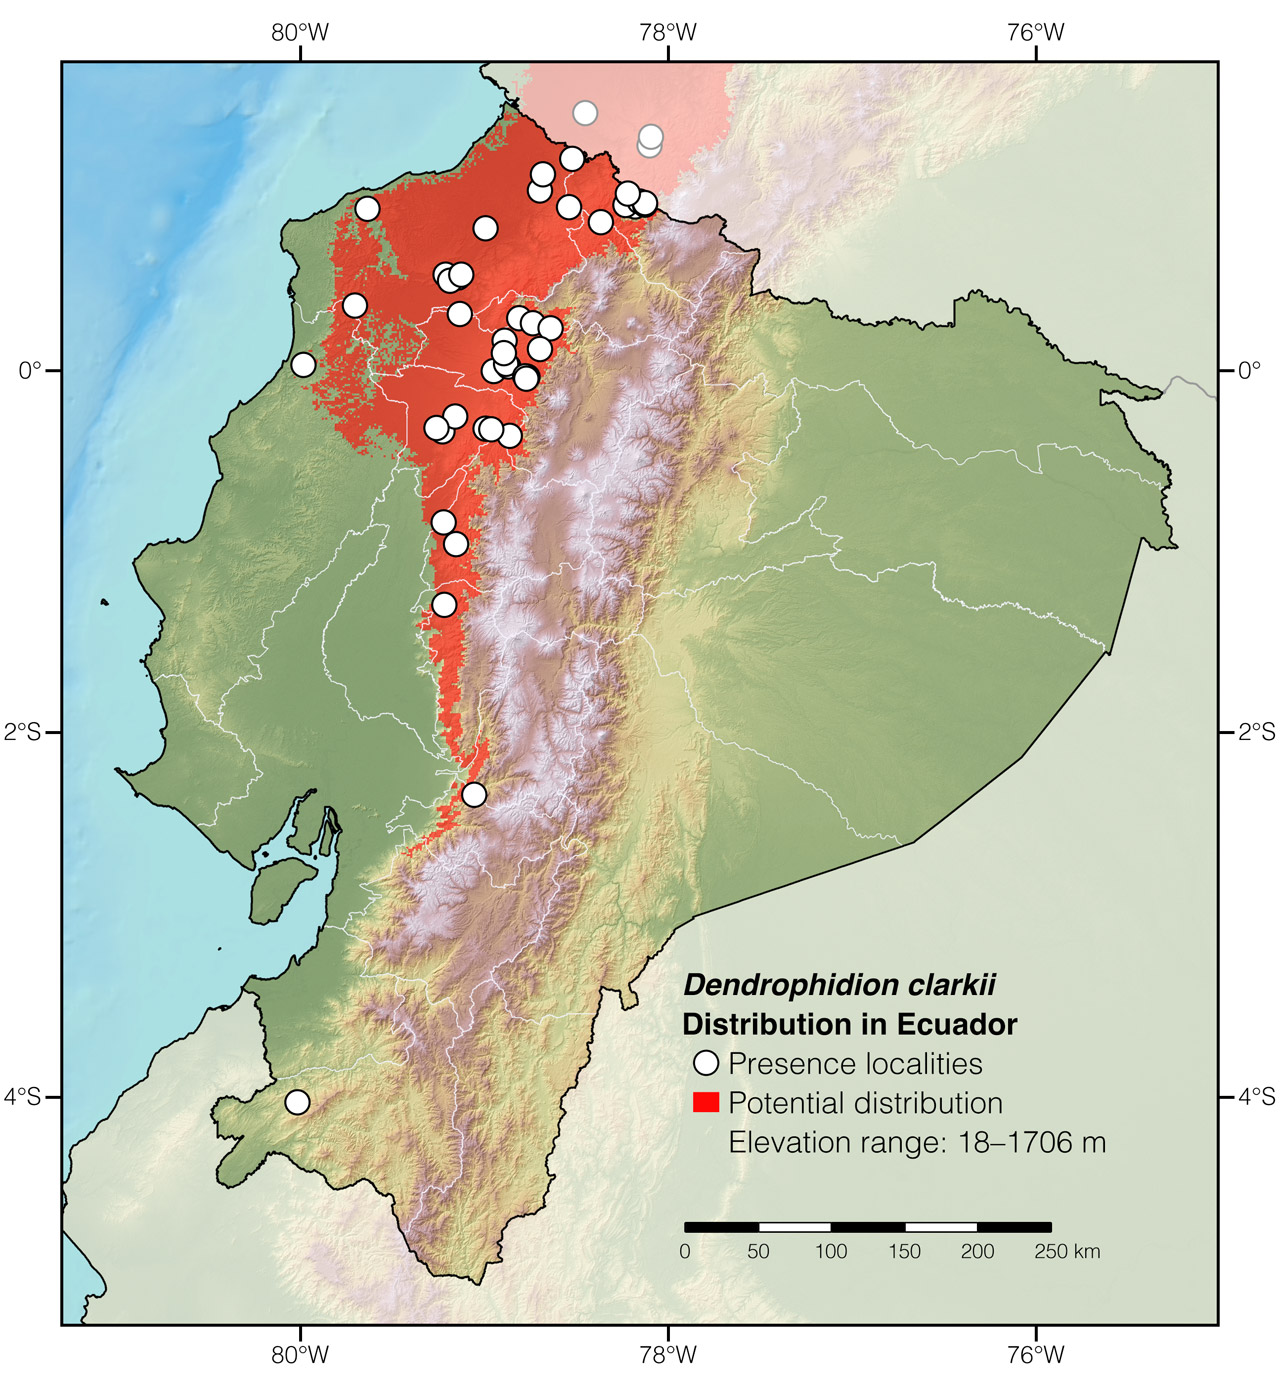 Distribution of Dendrophidion clarkii in Ecuador